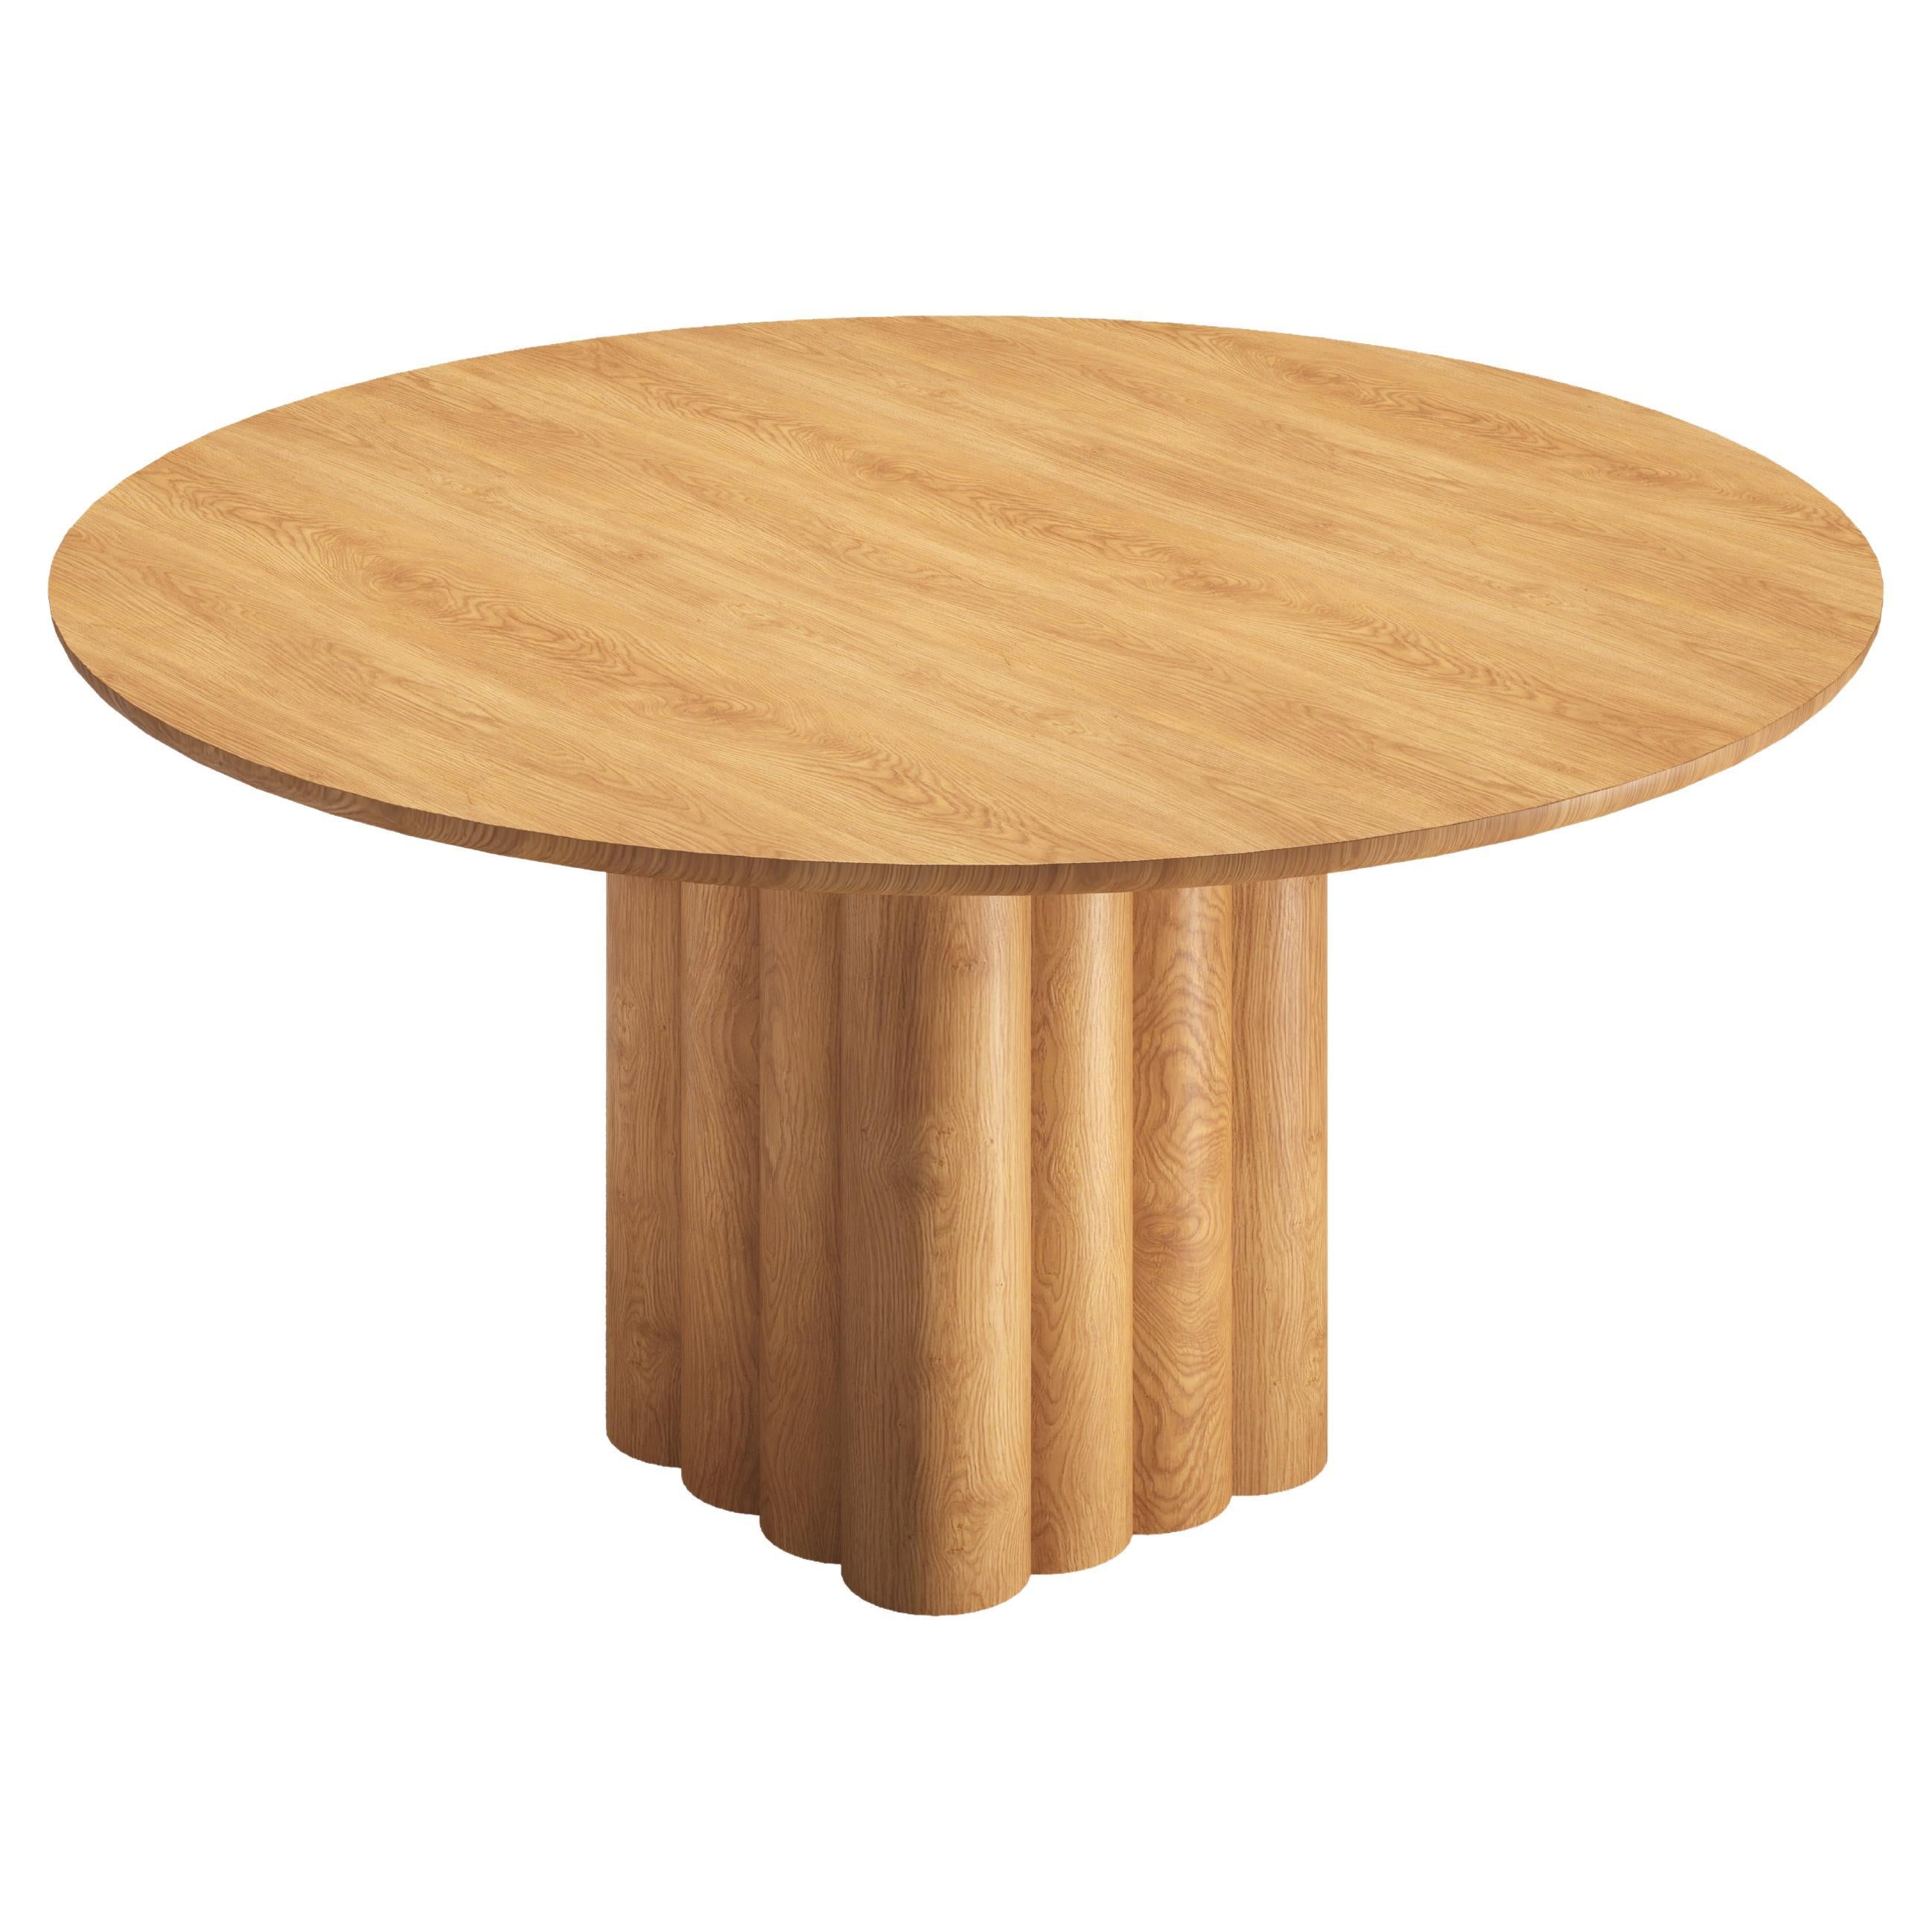 Table de salle à manger rondePlush par Dk3, en chêne naturel, 160 cm